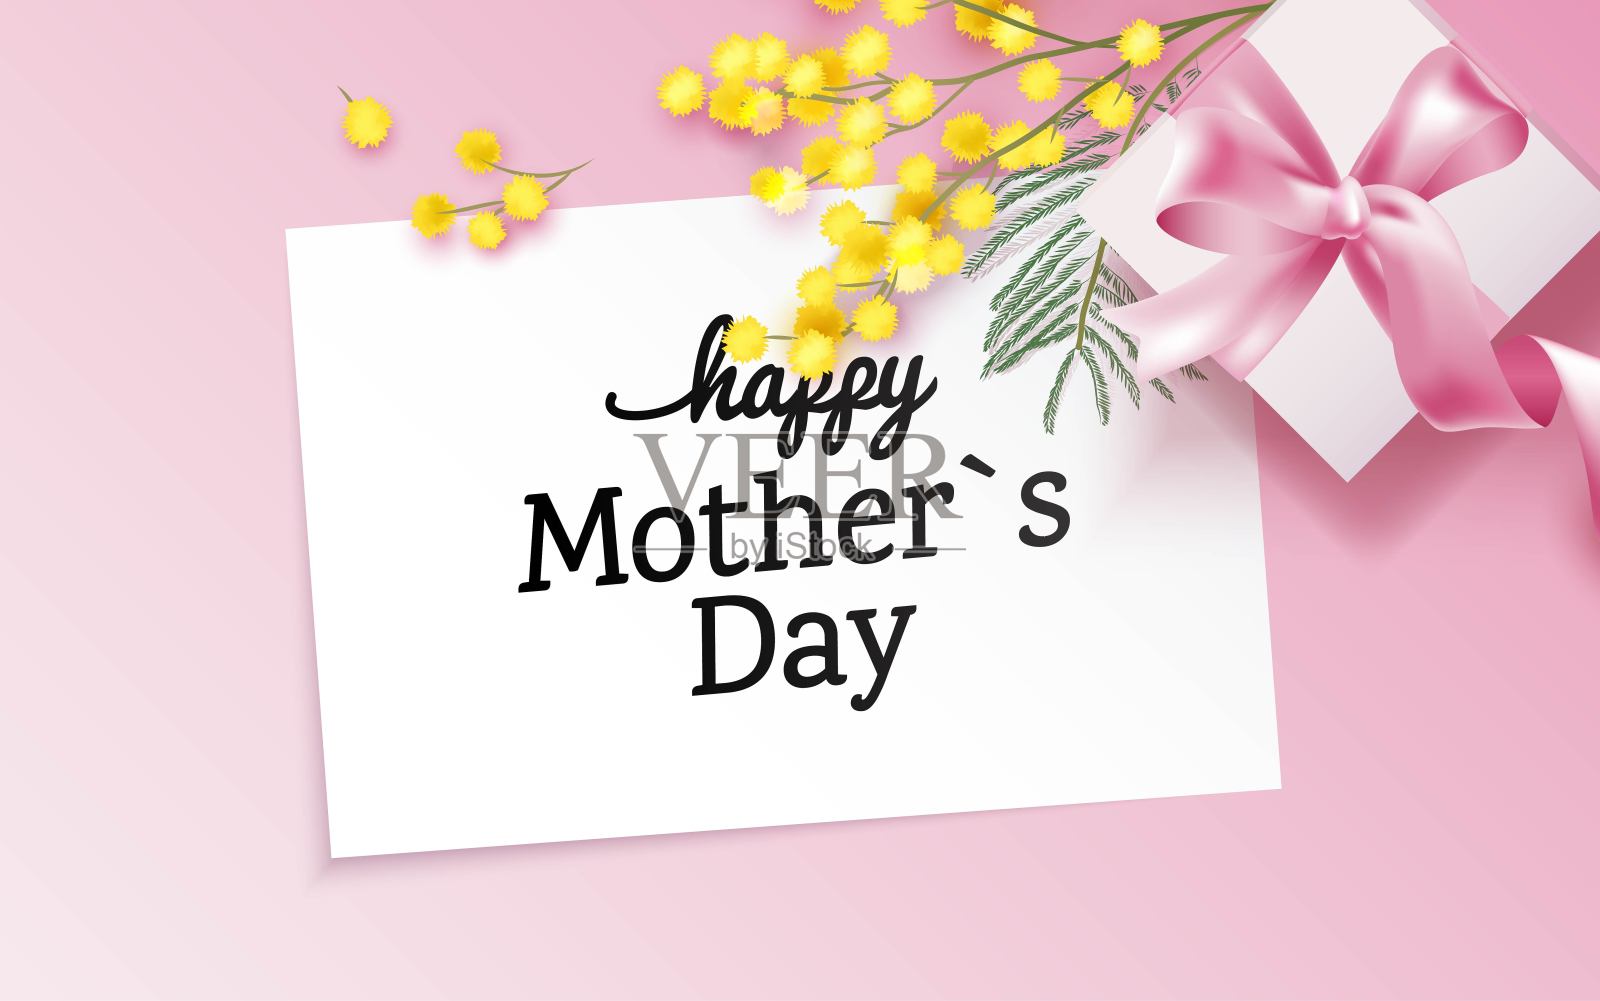 母亲节快乐贺卡与礼品盒和含羞草枝在粉红色的背景。设计模板素材